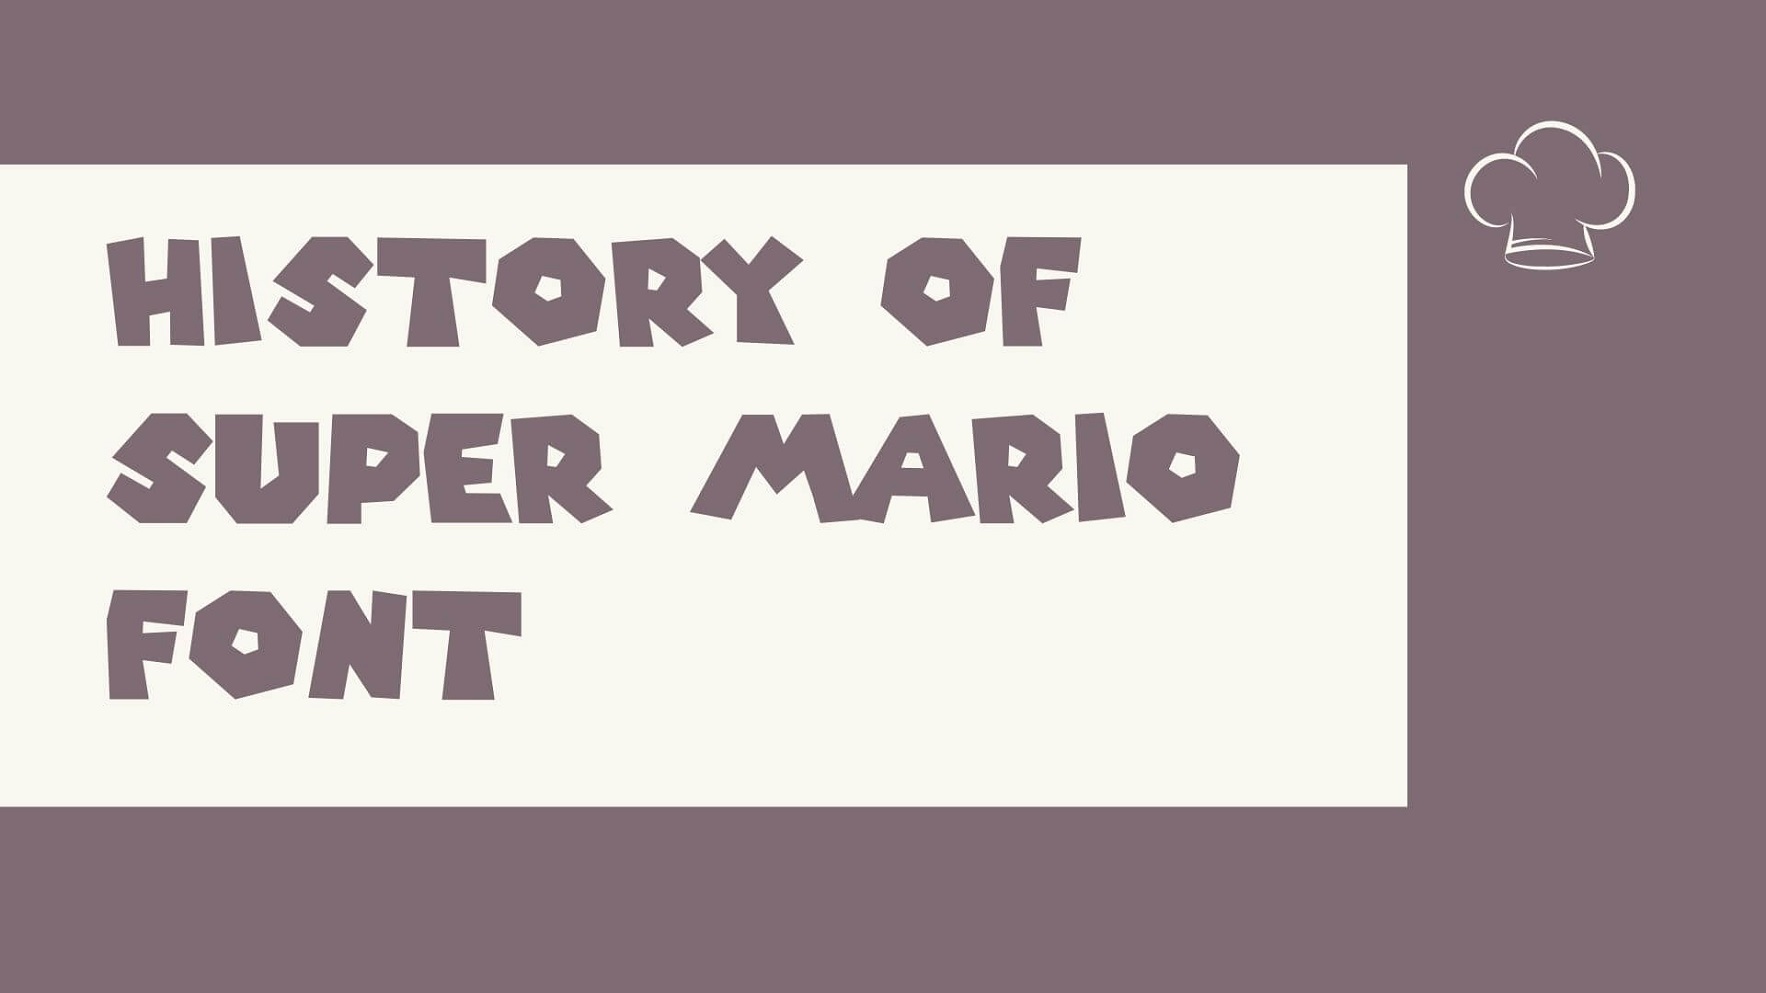 History of Super Mario Font - Super Mario Font Free Download